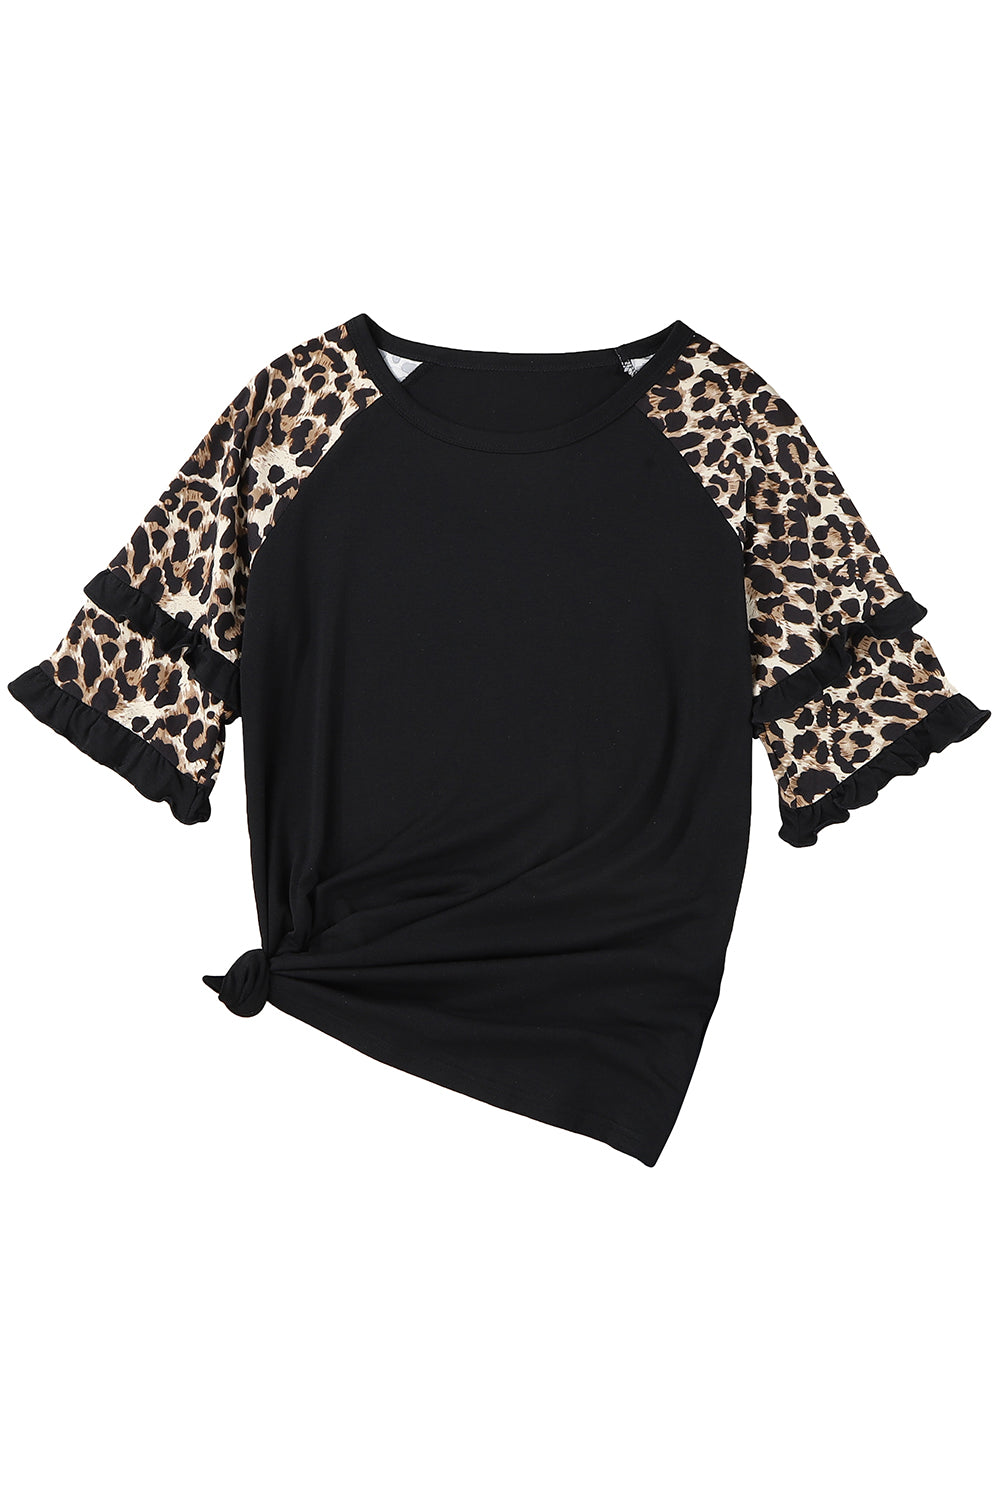 Crna majica s nabranim leopard rukavima od krpa